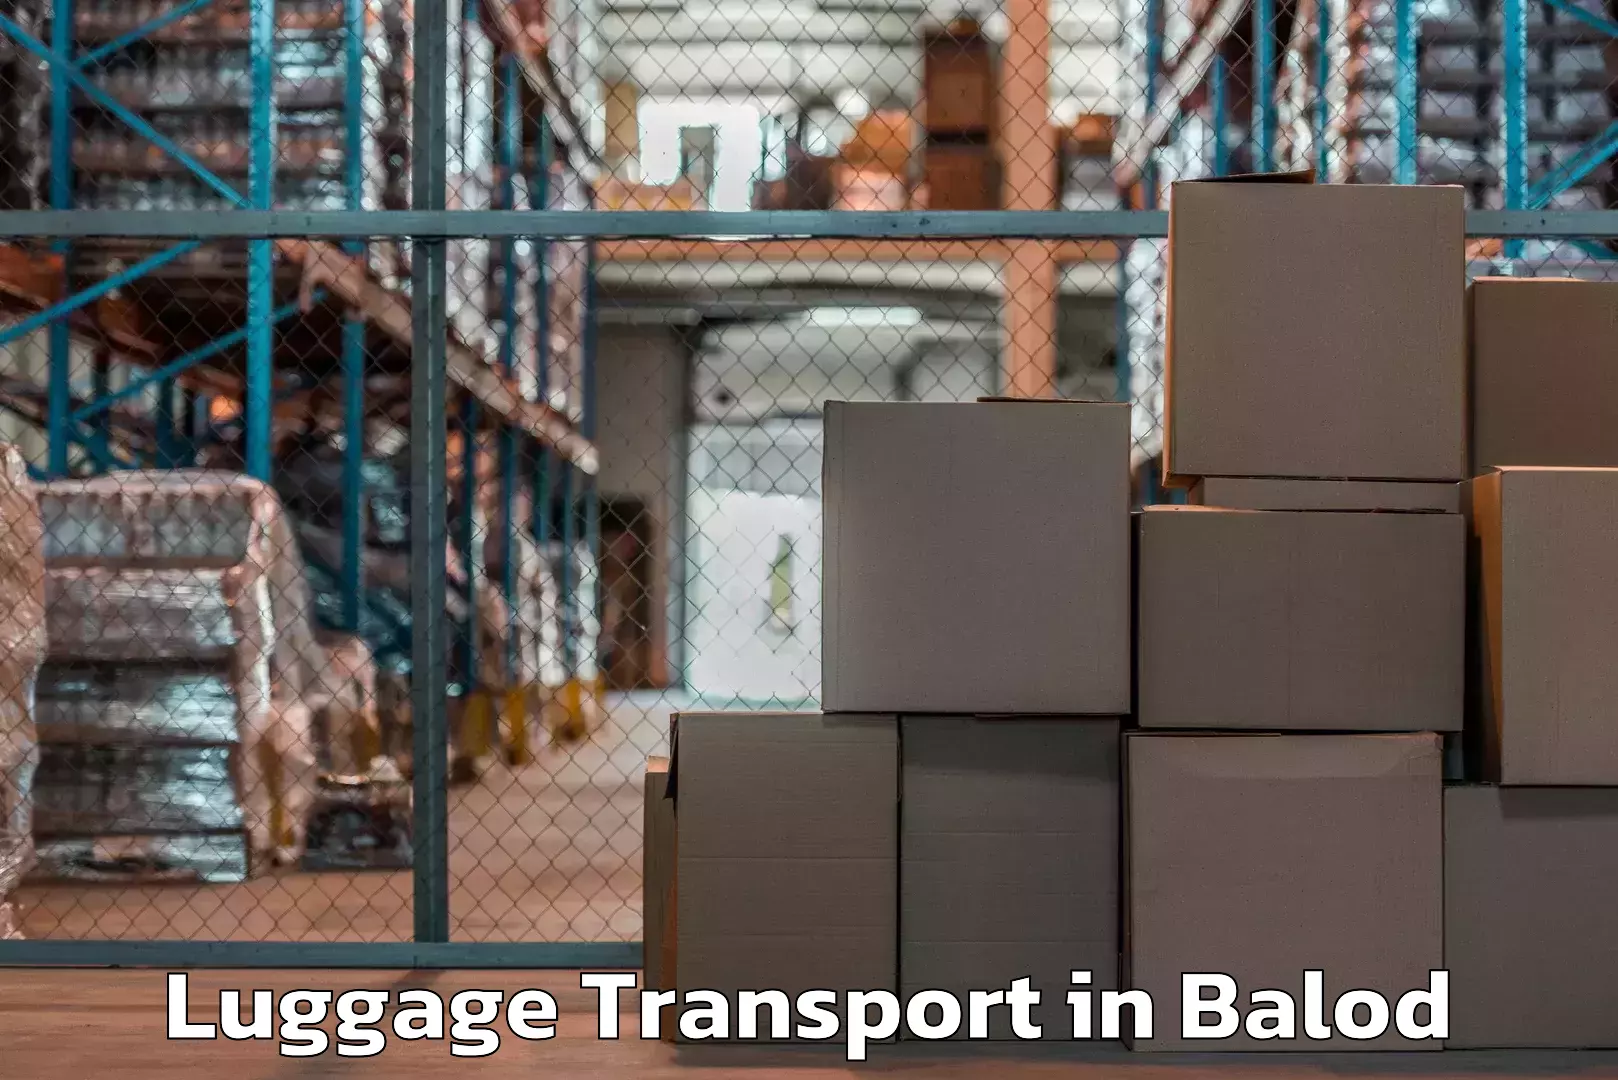 Regional luggage transport in Balod